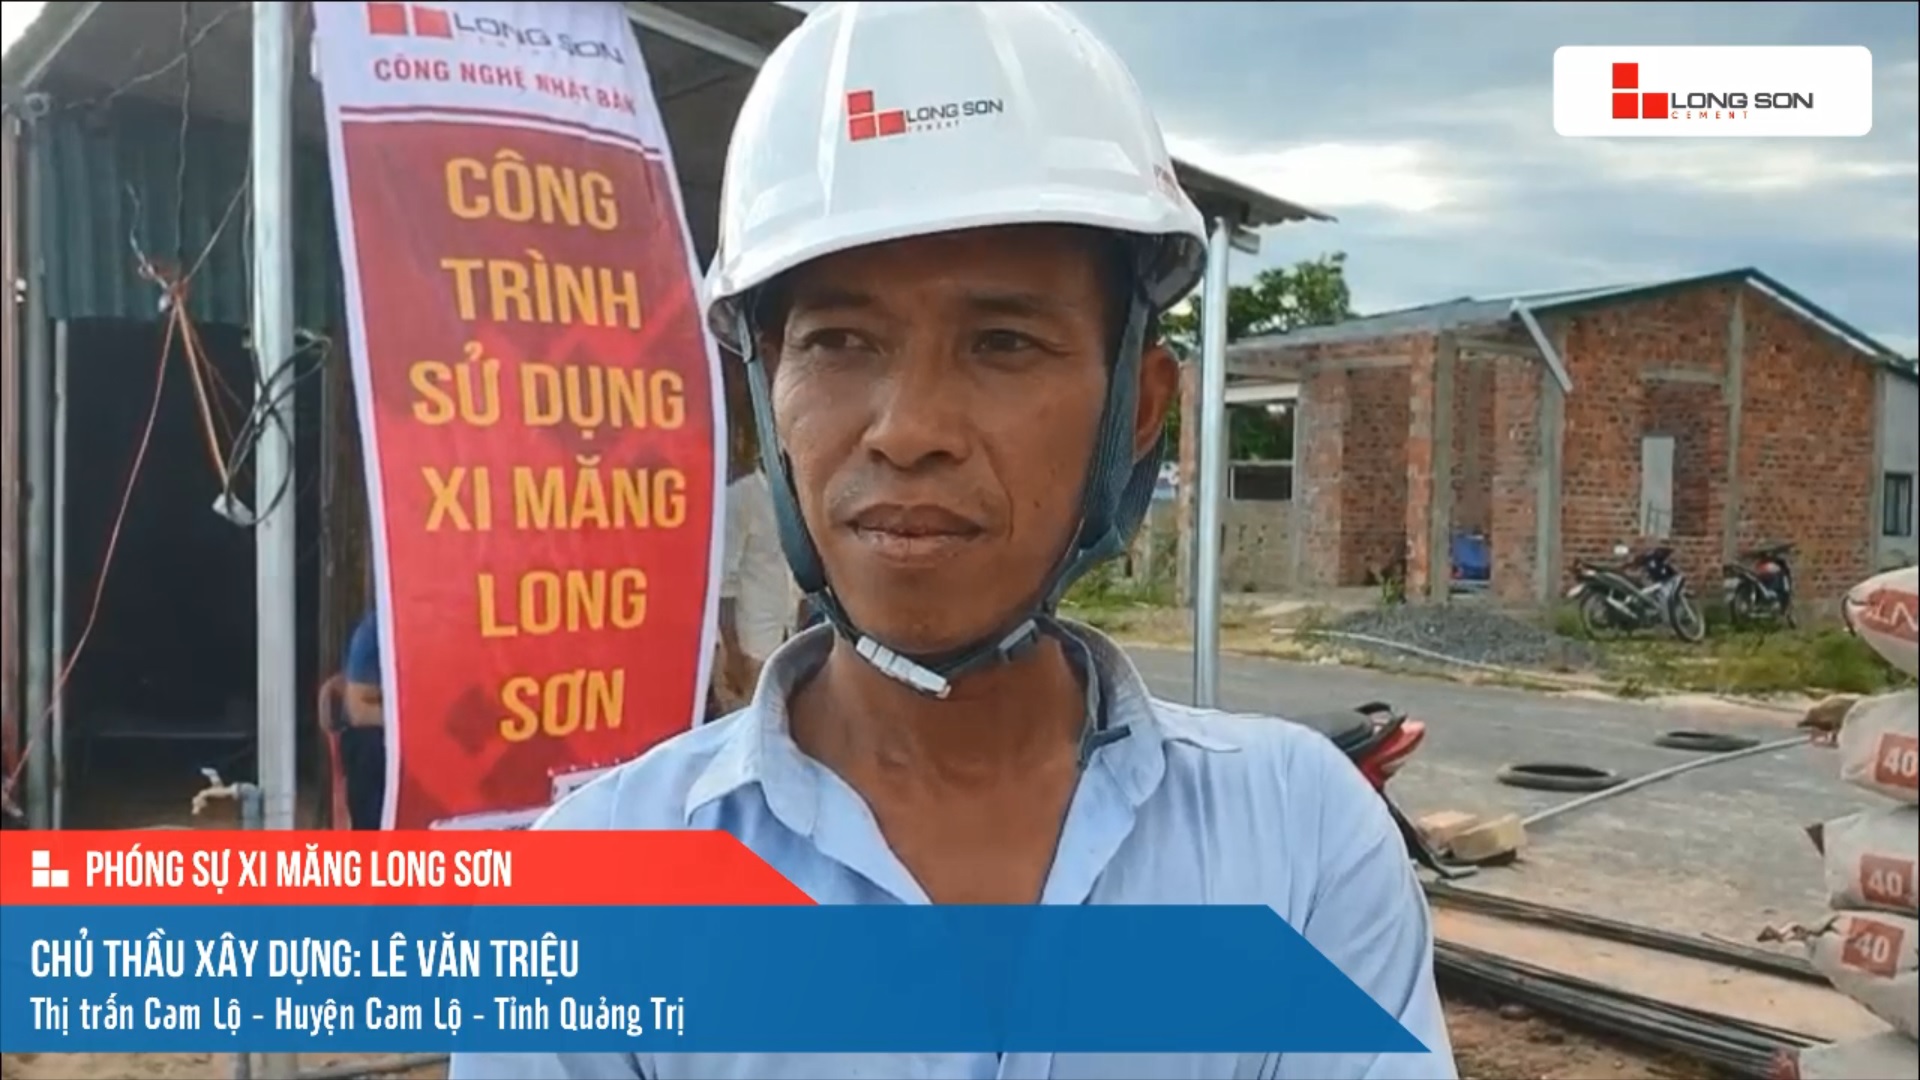 Phóng sự công trình sử dụng xi măng Long Sơn tại Quảng Trị ngày 06/08/2021